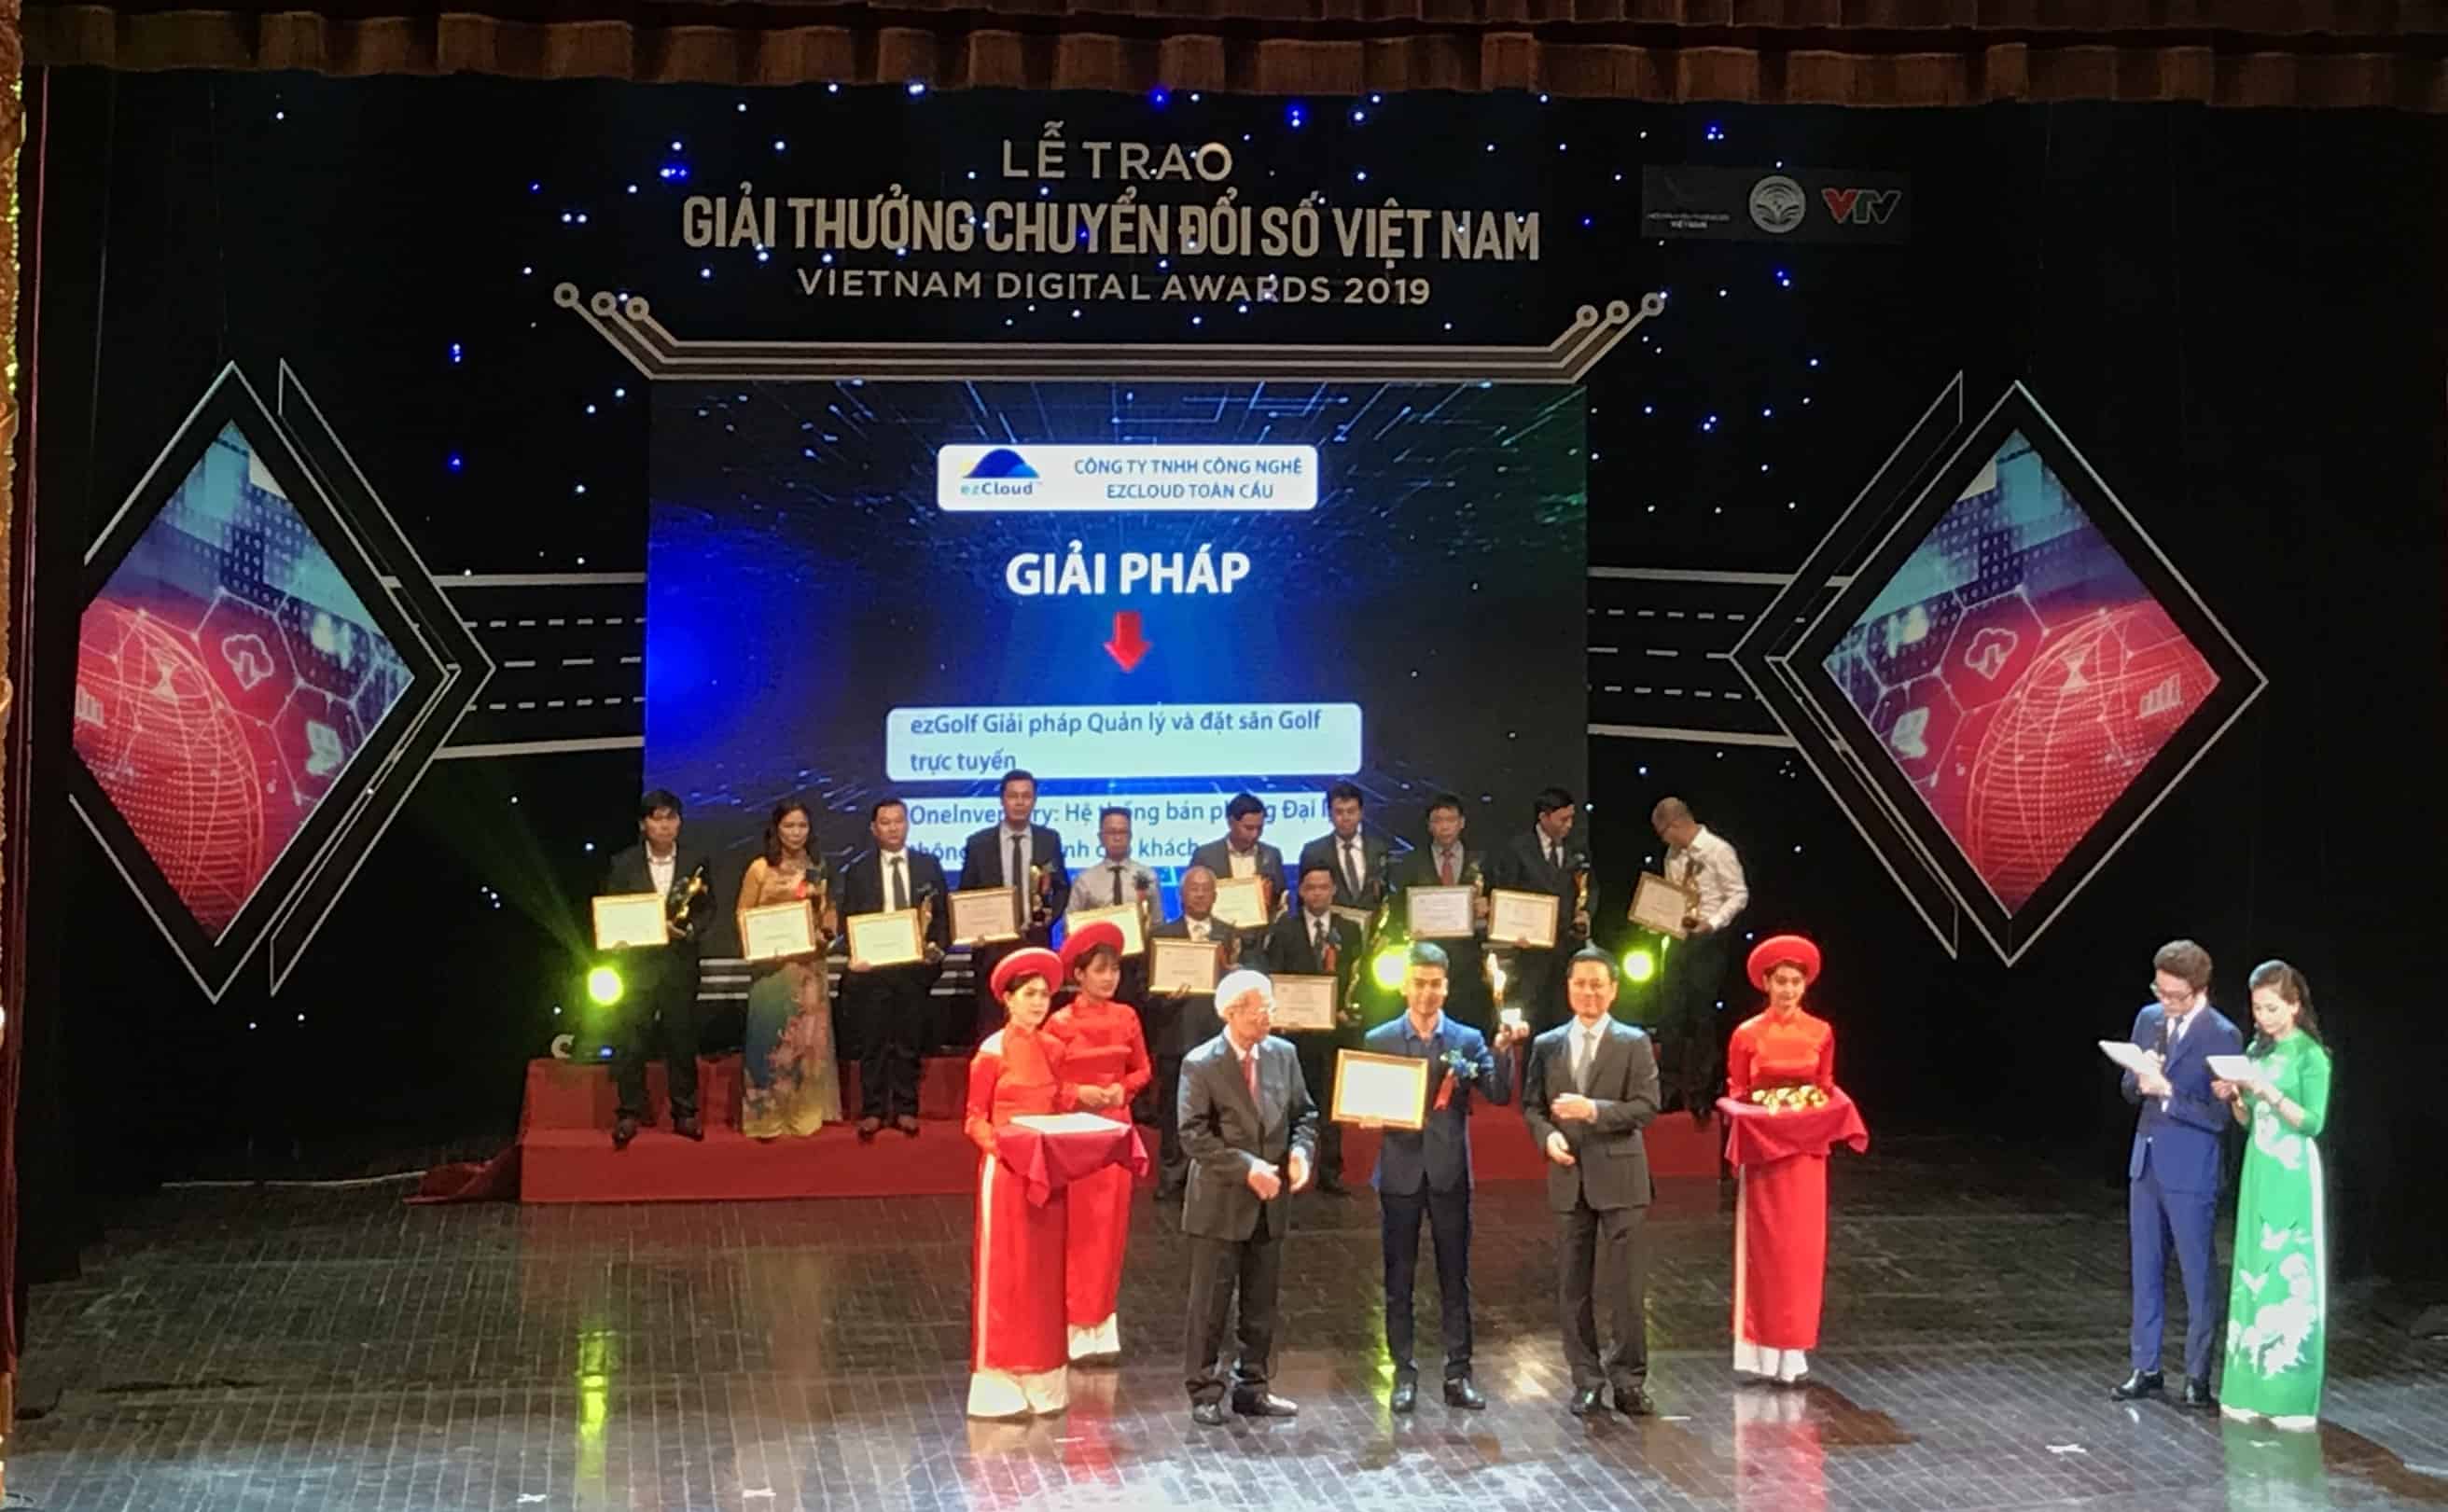 OneInventory VÀ ezGolf nhận giải thưởng "CHUYỂN ĐỔI SỐ VIỆT NAM – VIETNAM DIGITAL AWARDS 2019"